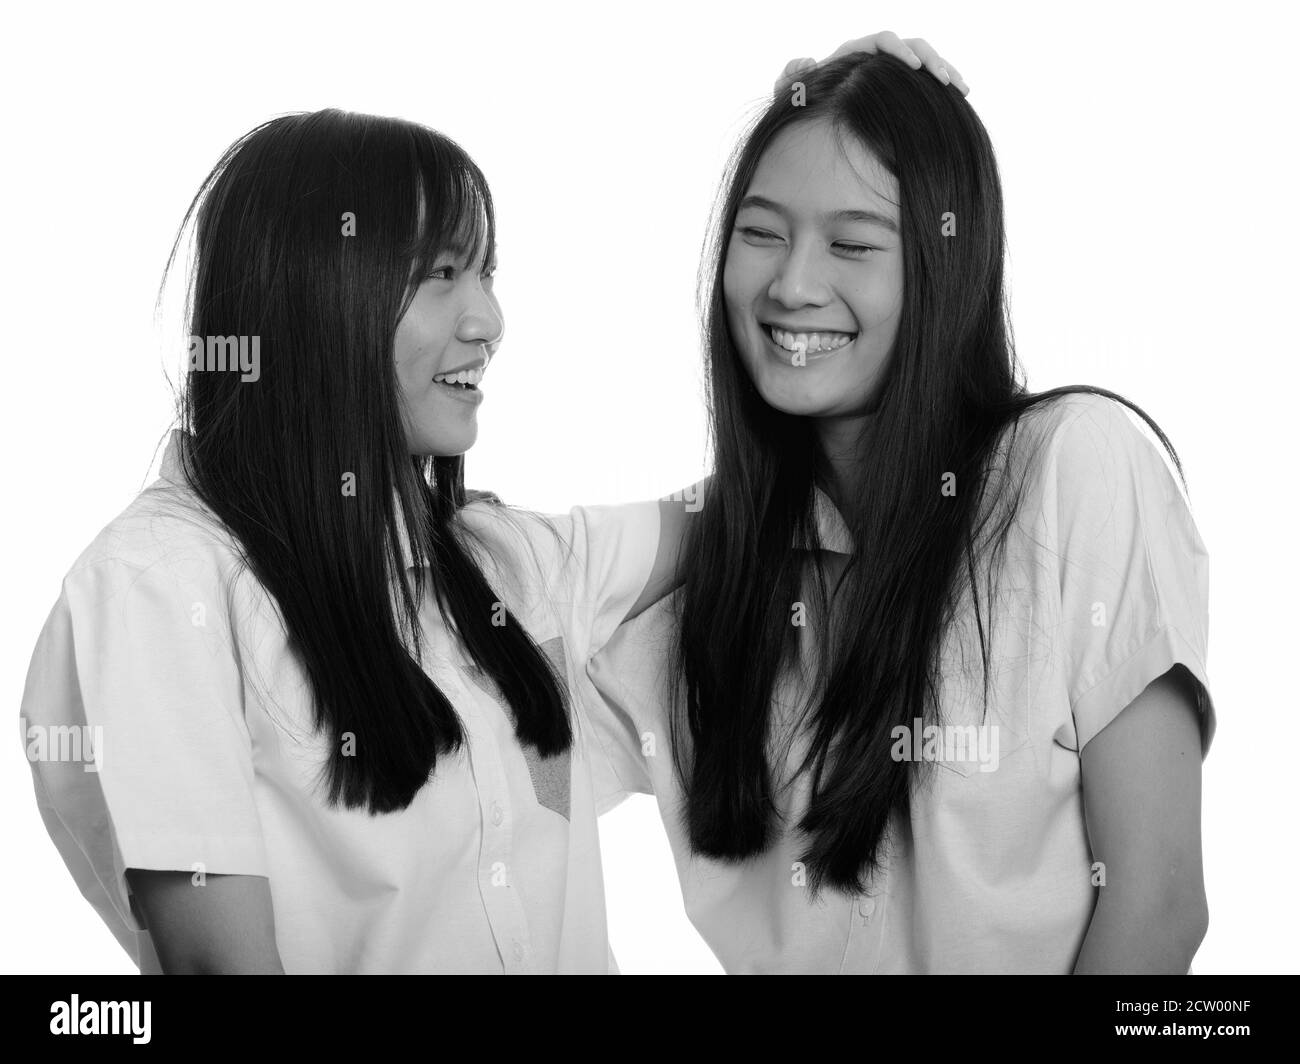 Zwei junge gerne asiatische Mädchen lächelnd und ihr Freund auf den Kopf klopfen Stockfoto